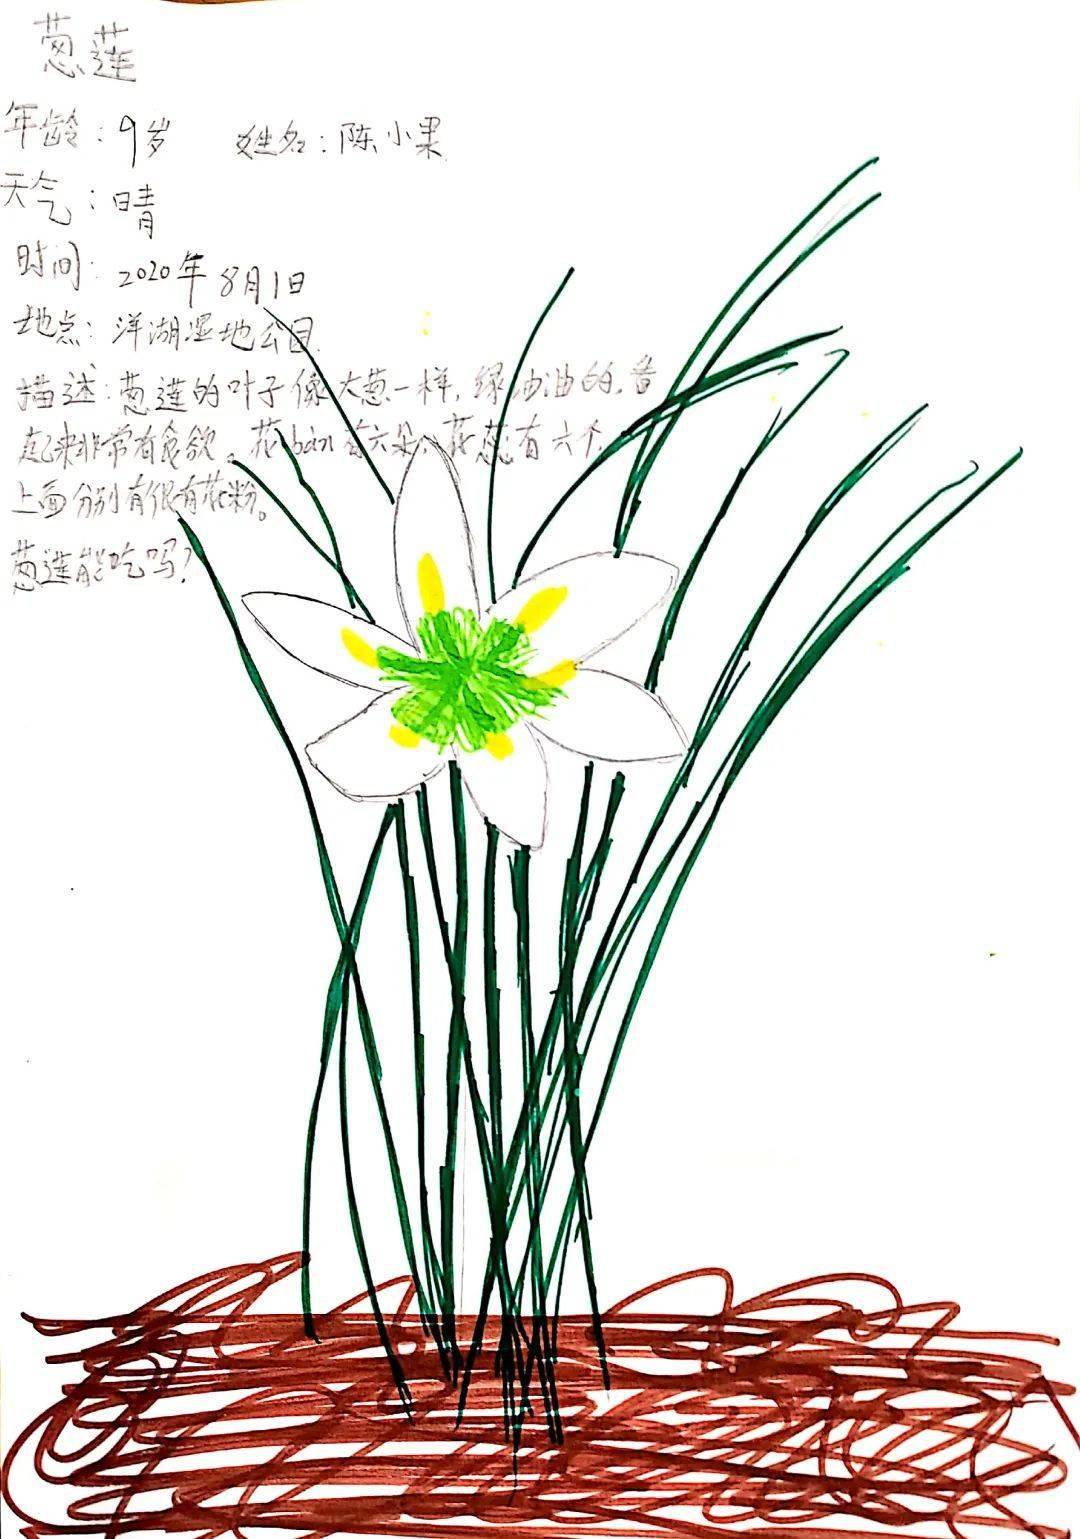 陈小果的这幅自然笔记《葱莲》非常详细的画出了葱莲花瓣,花药以及